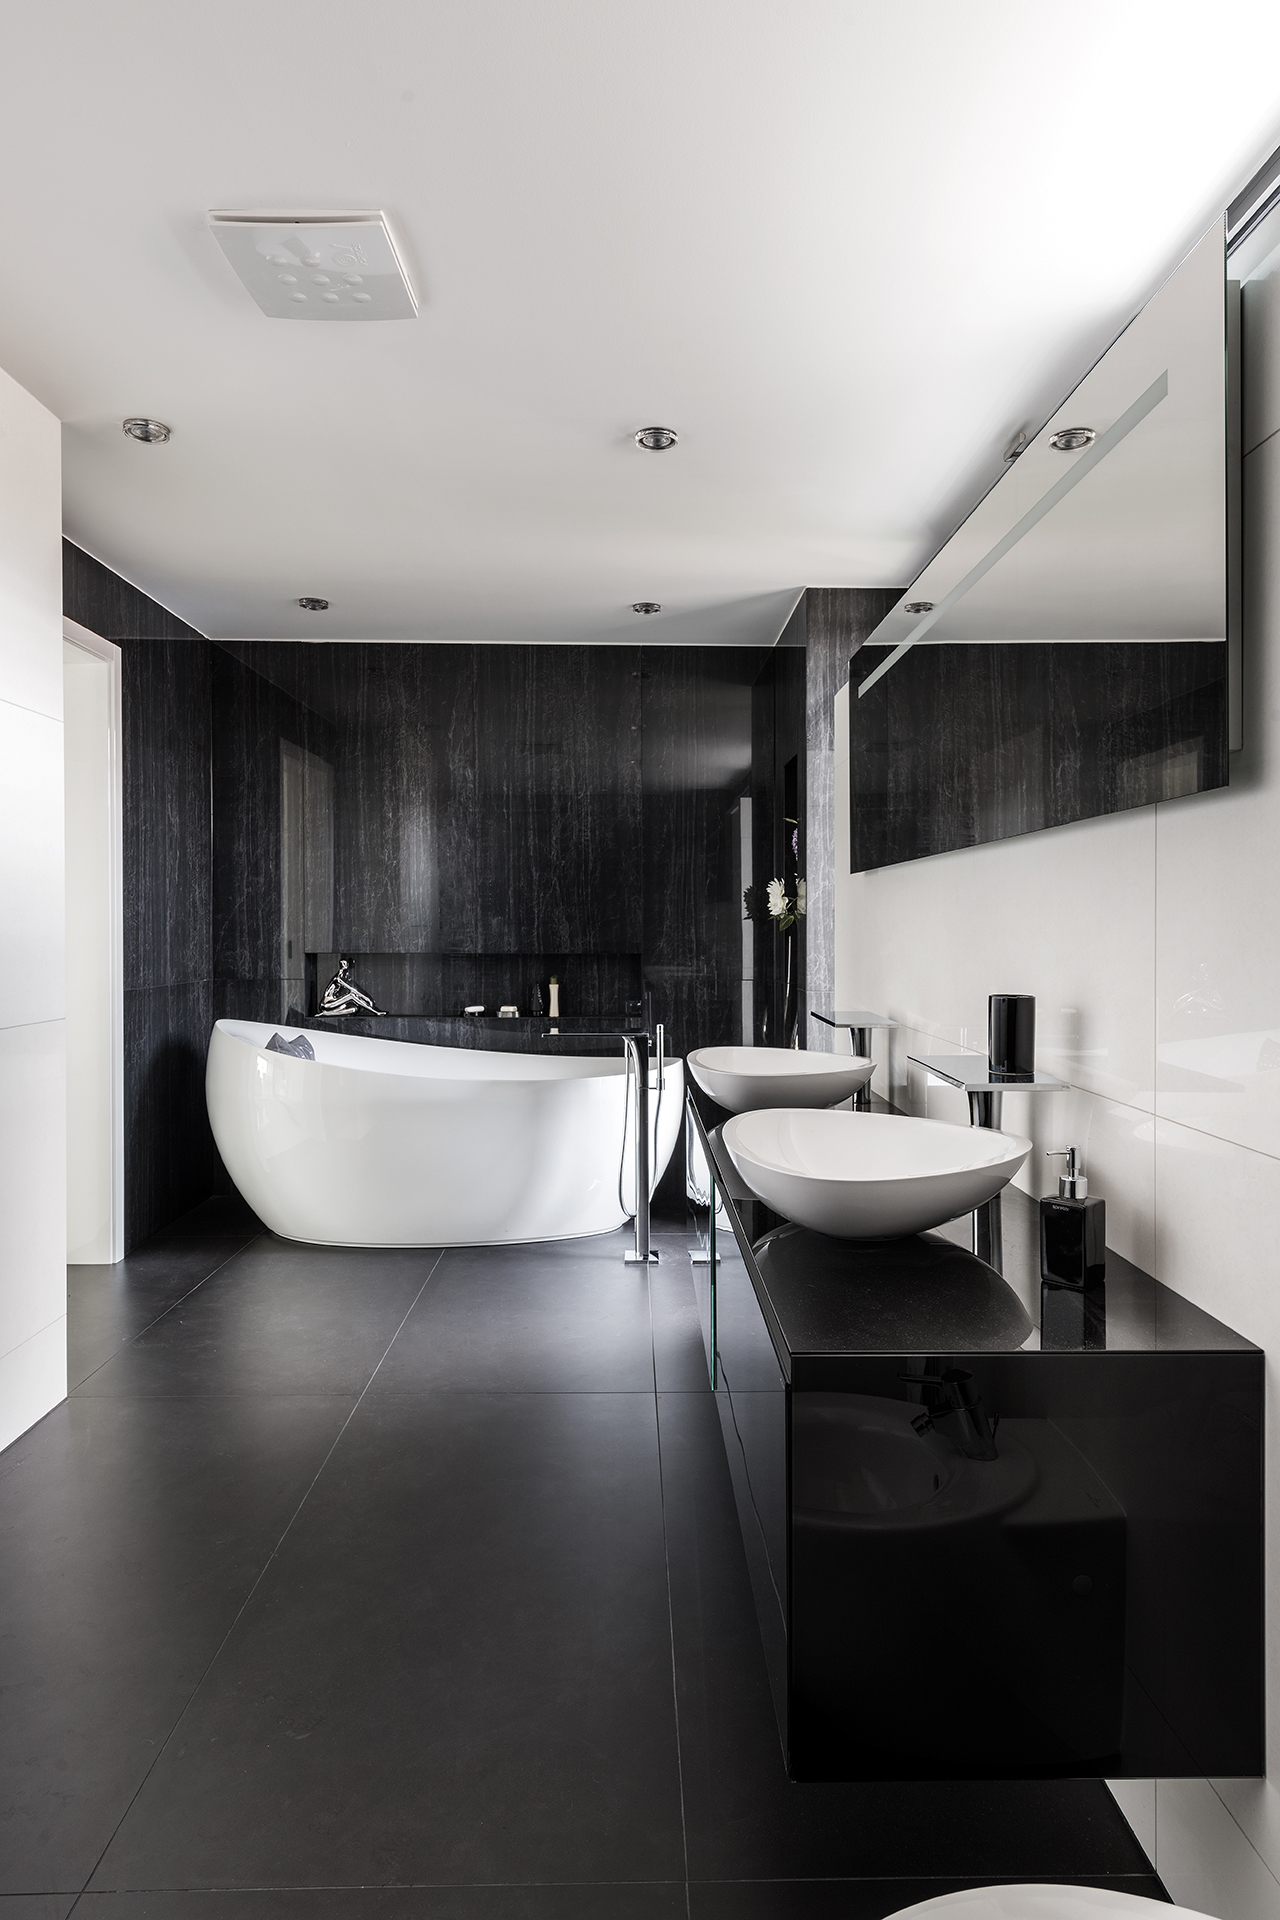 Hanak Мебель реализация современного интерьера ванная комната